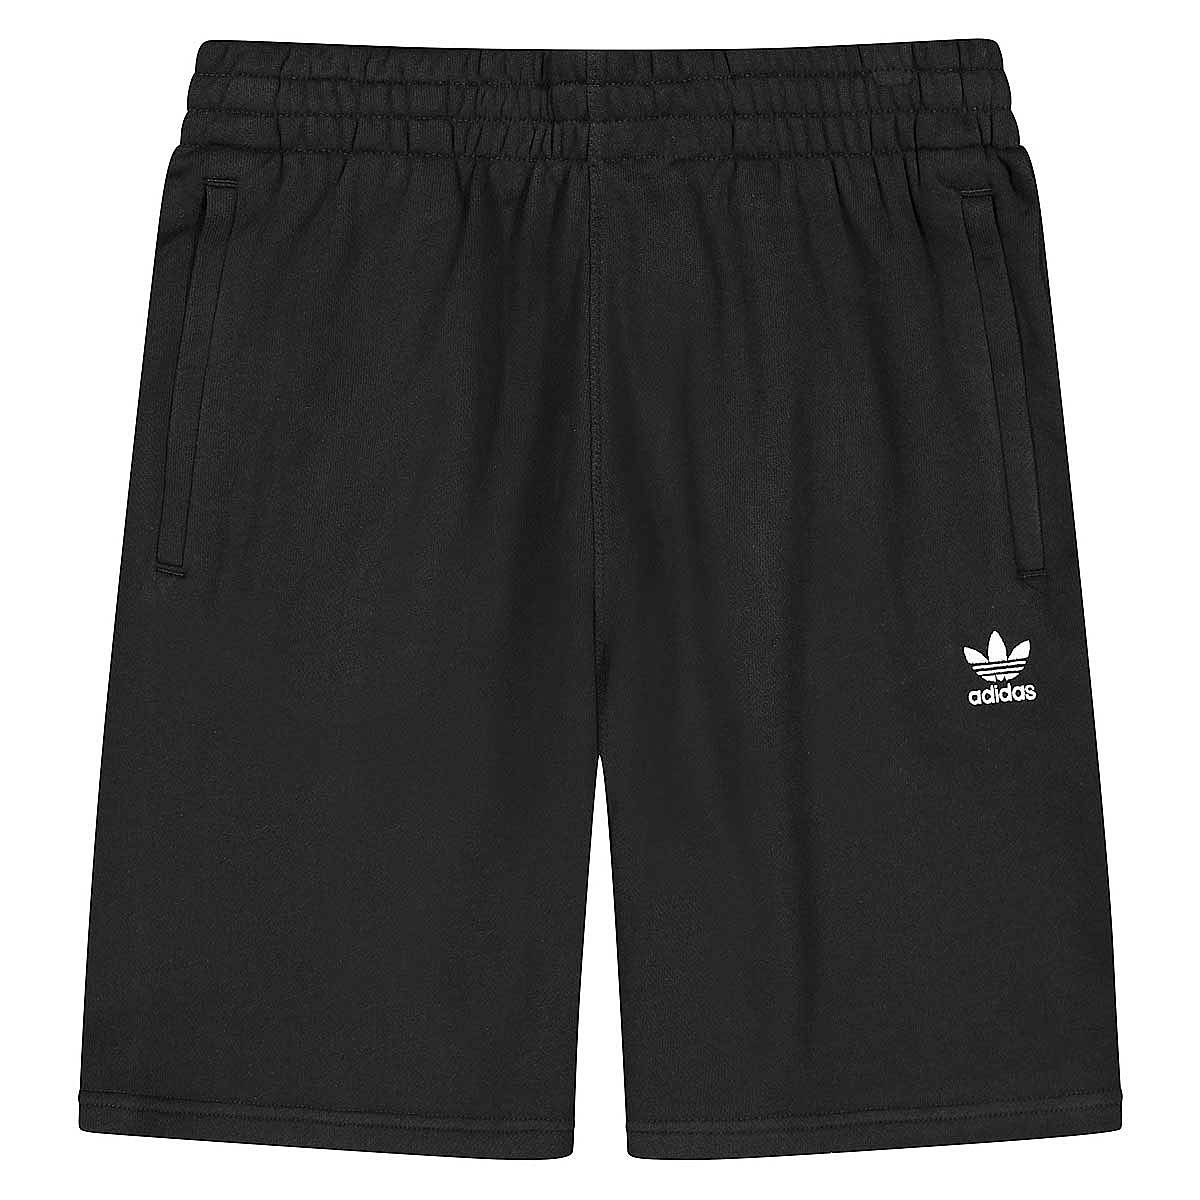 Image of Adidas Essential Short, Black